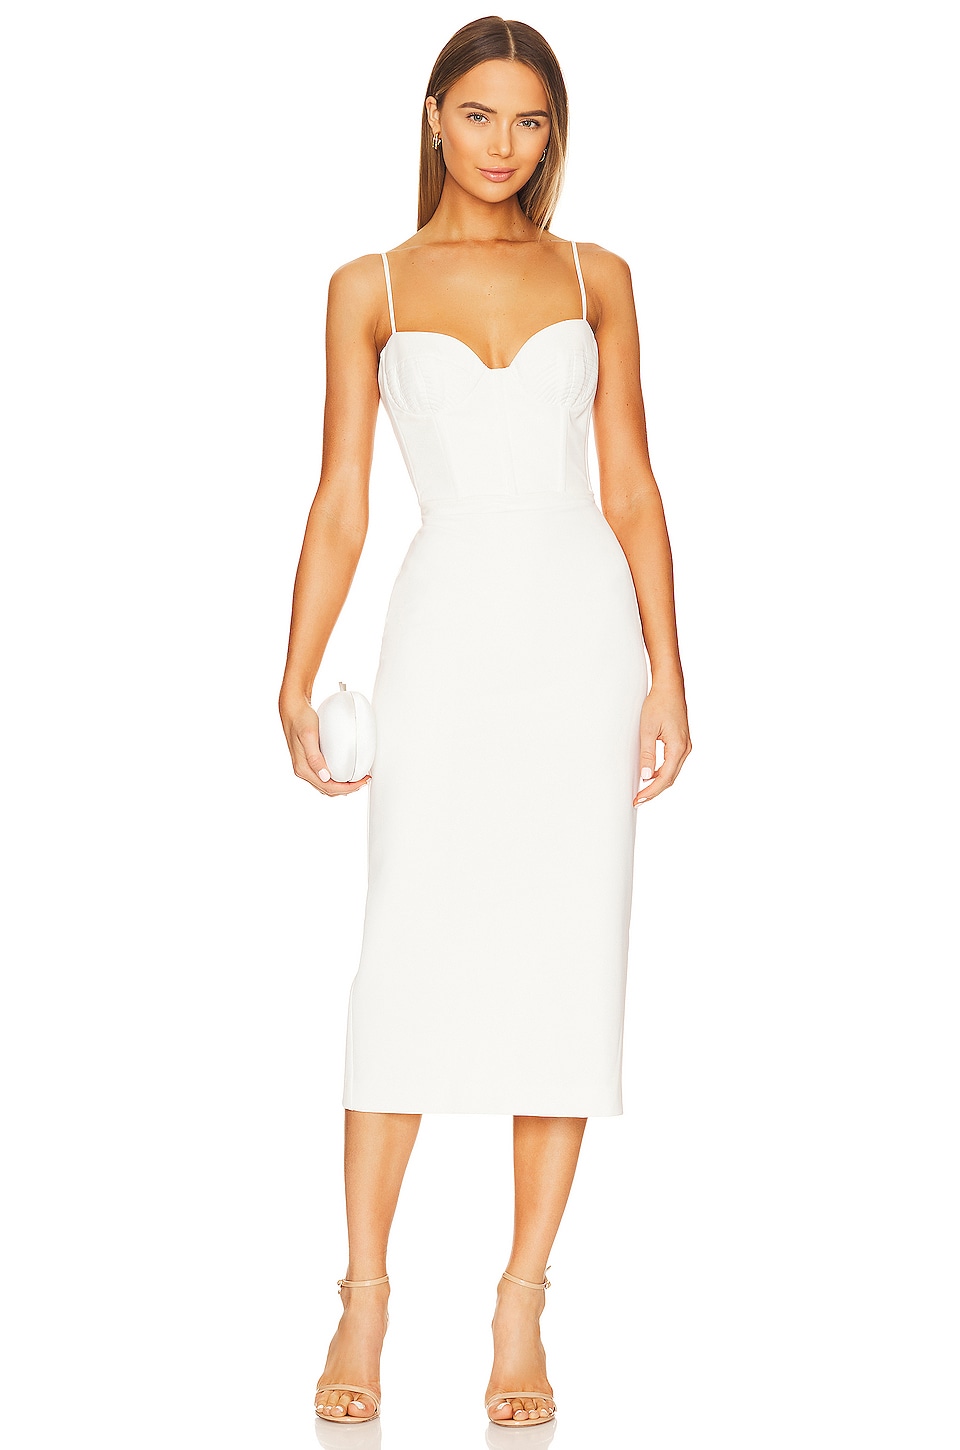 Celeste Feather Mini Dress - White